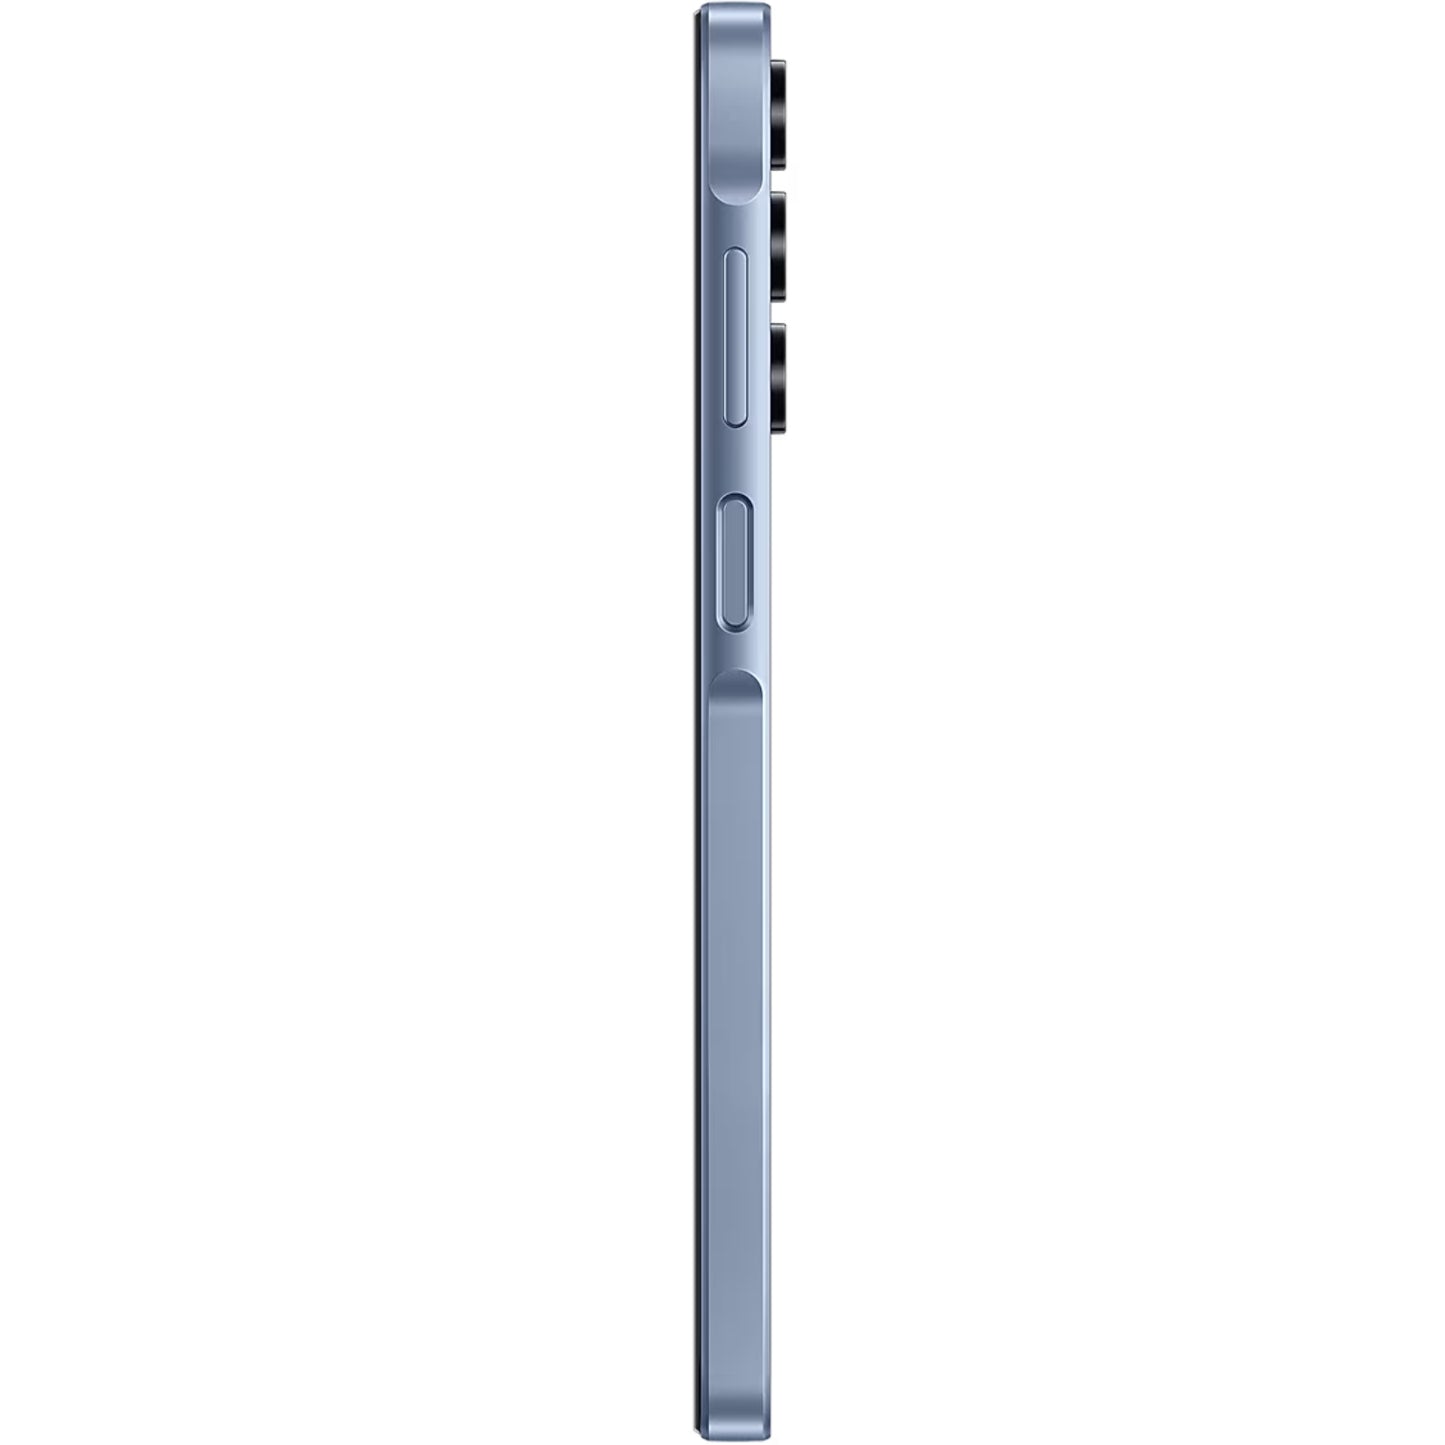 Samsung Galaxy A15 A155FD 4G (8GB ram) - MyMobile